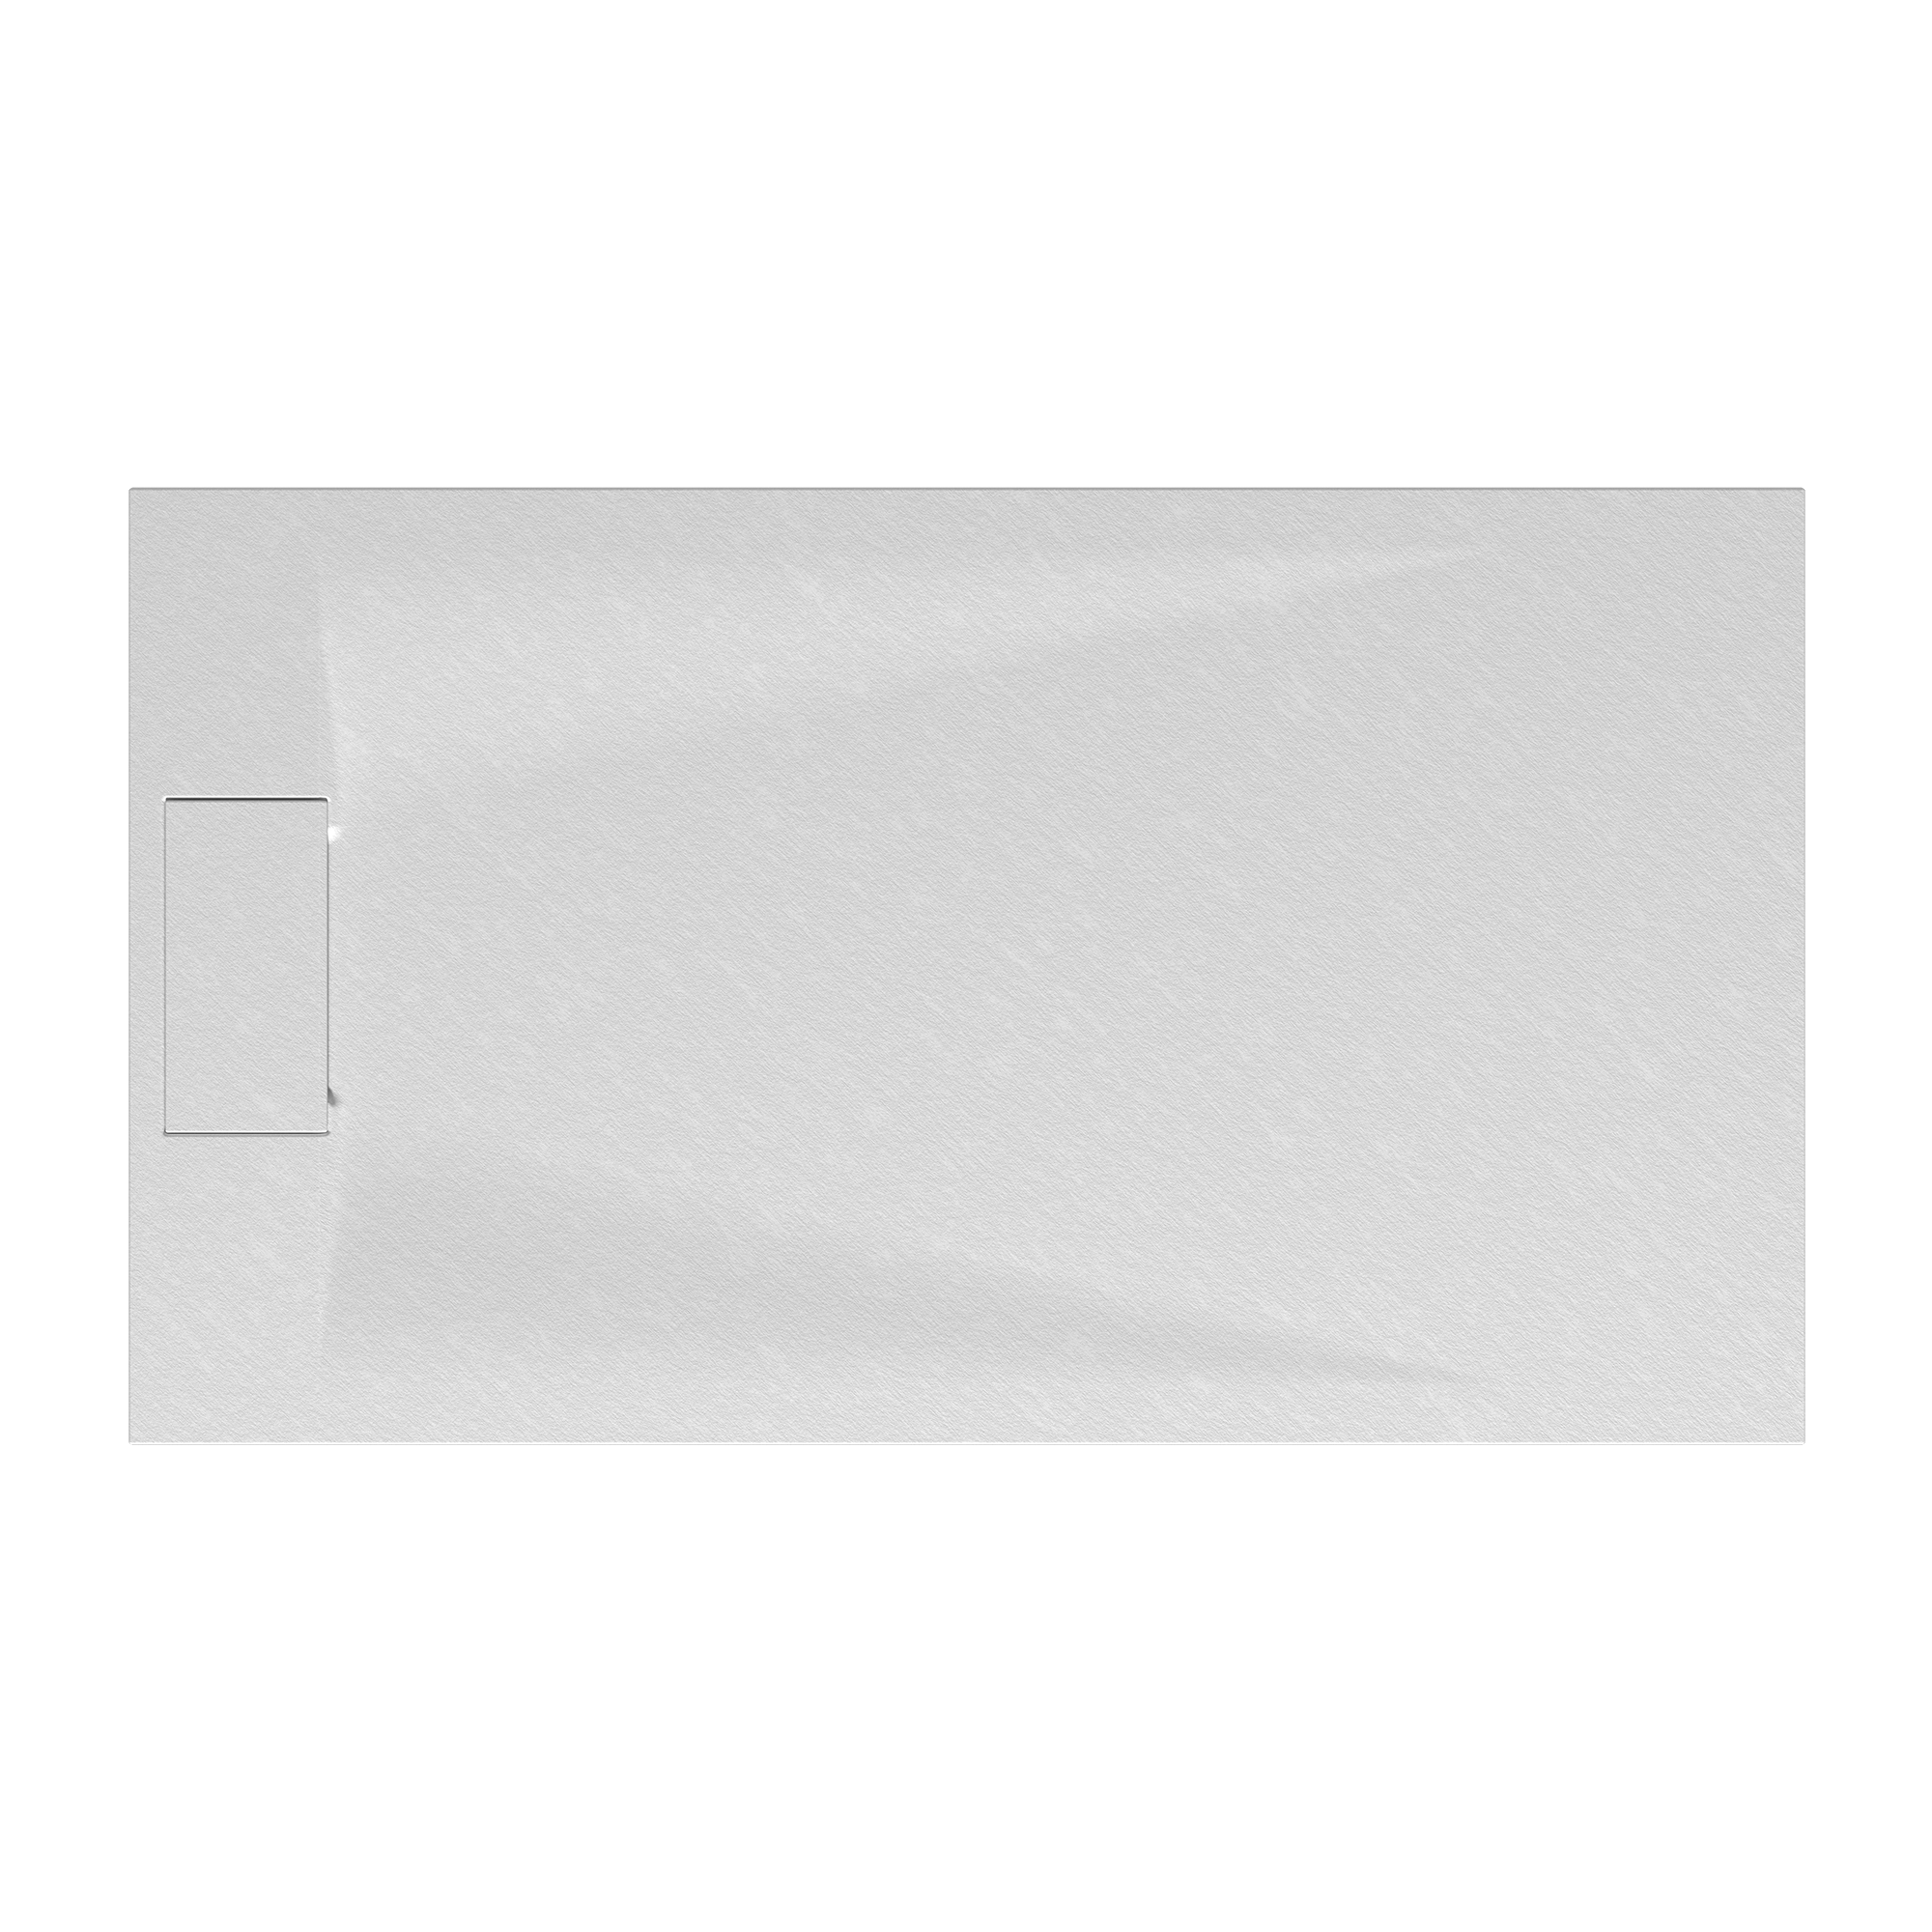 Duschwanne 'Lite Line' Steinoptik weiß 80 x 140 cm + product picture